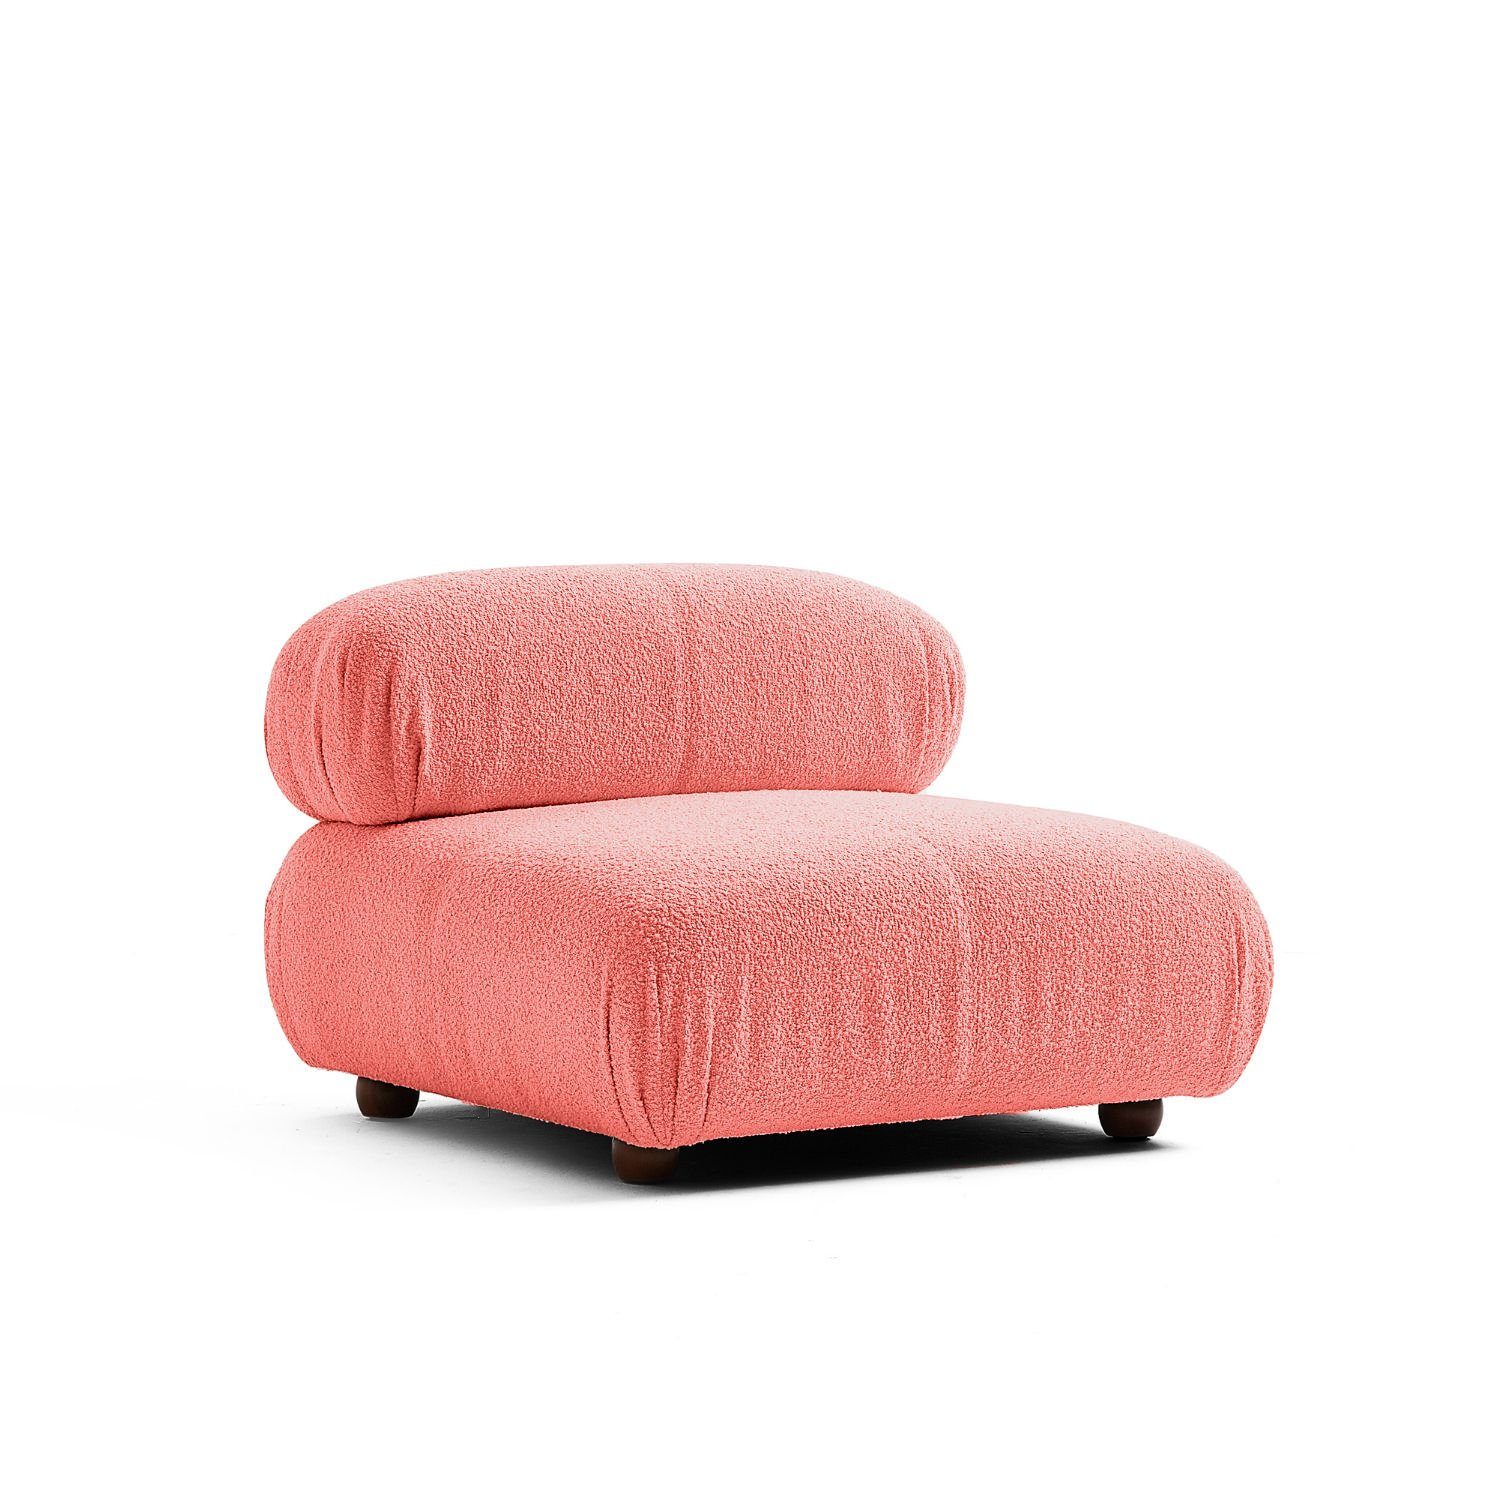 Touch me Sofa Knuffiges Sitzmöbel neueste Generation aus Komfortschaum Hellrot-Lieferung und Aufbau im Preis enthalten!